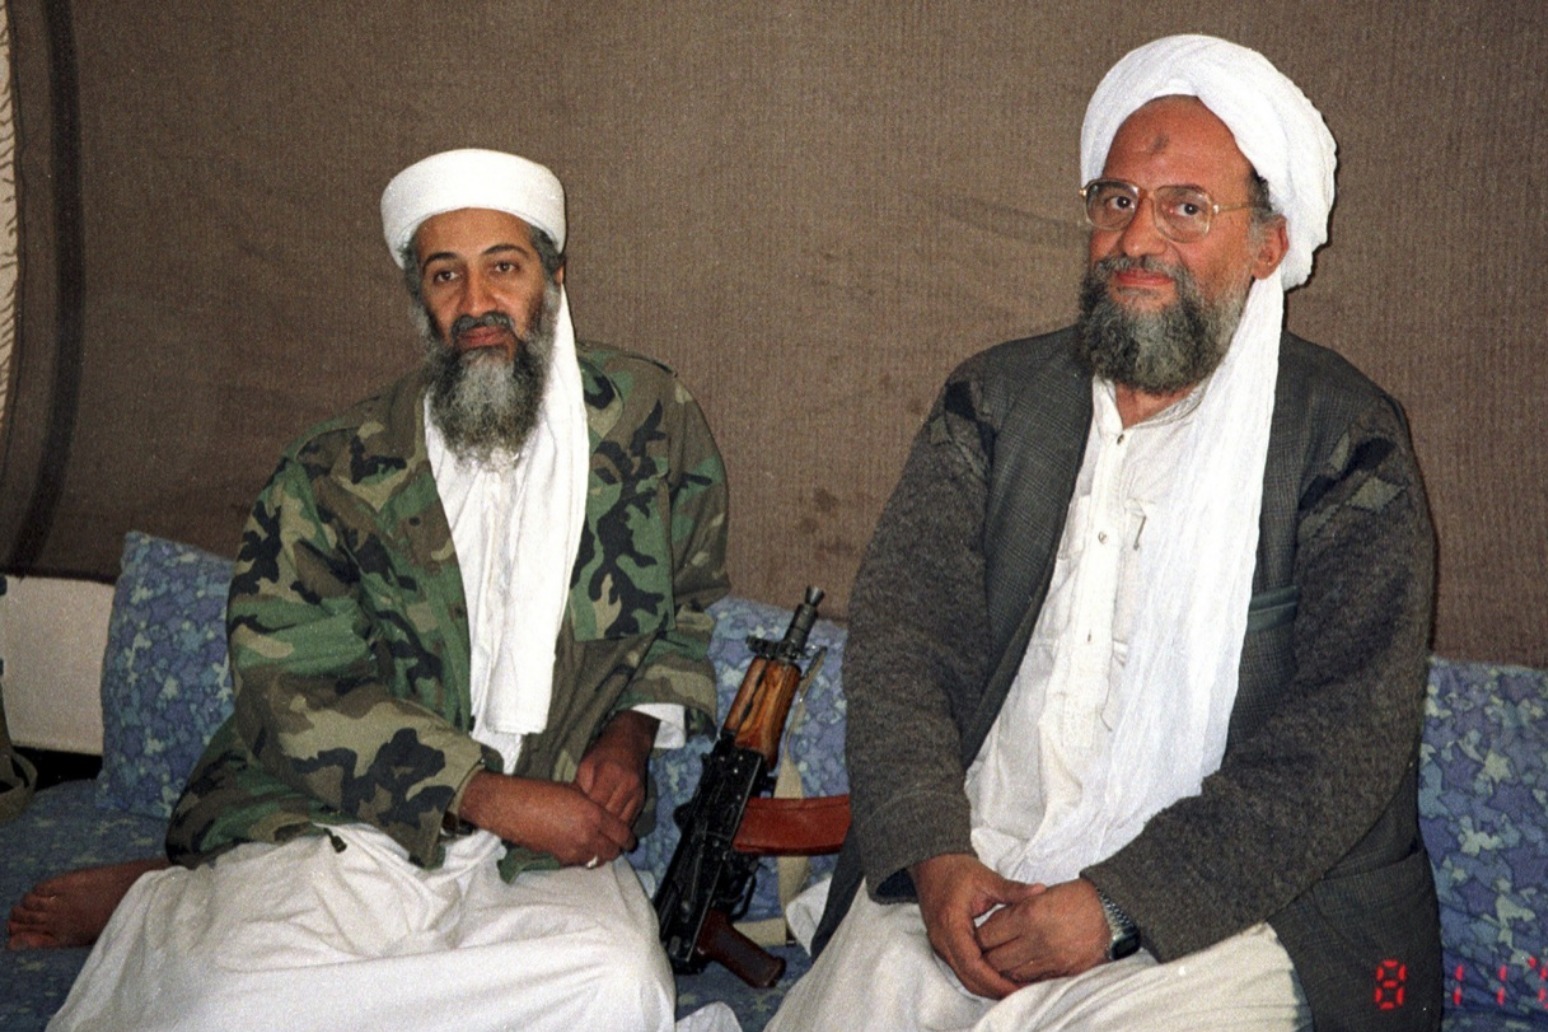 Joe Biden confirms death of al Qaeda leader al-Zawahri in US drone strike 